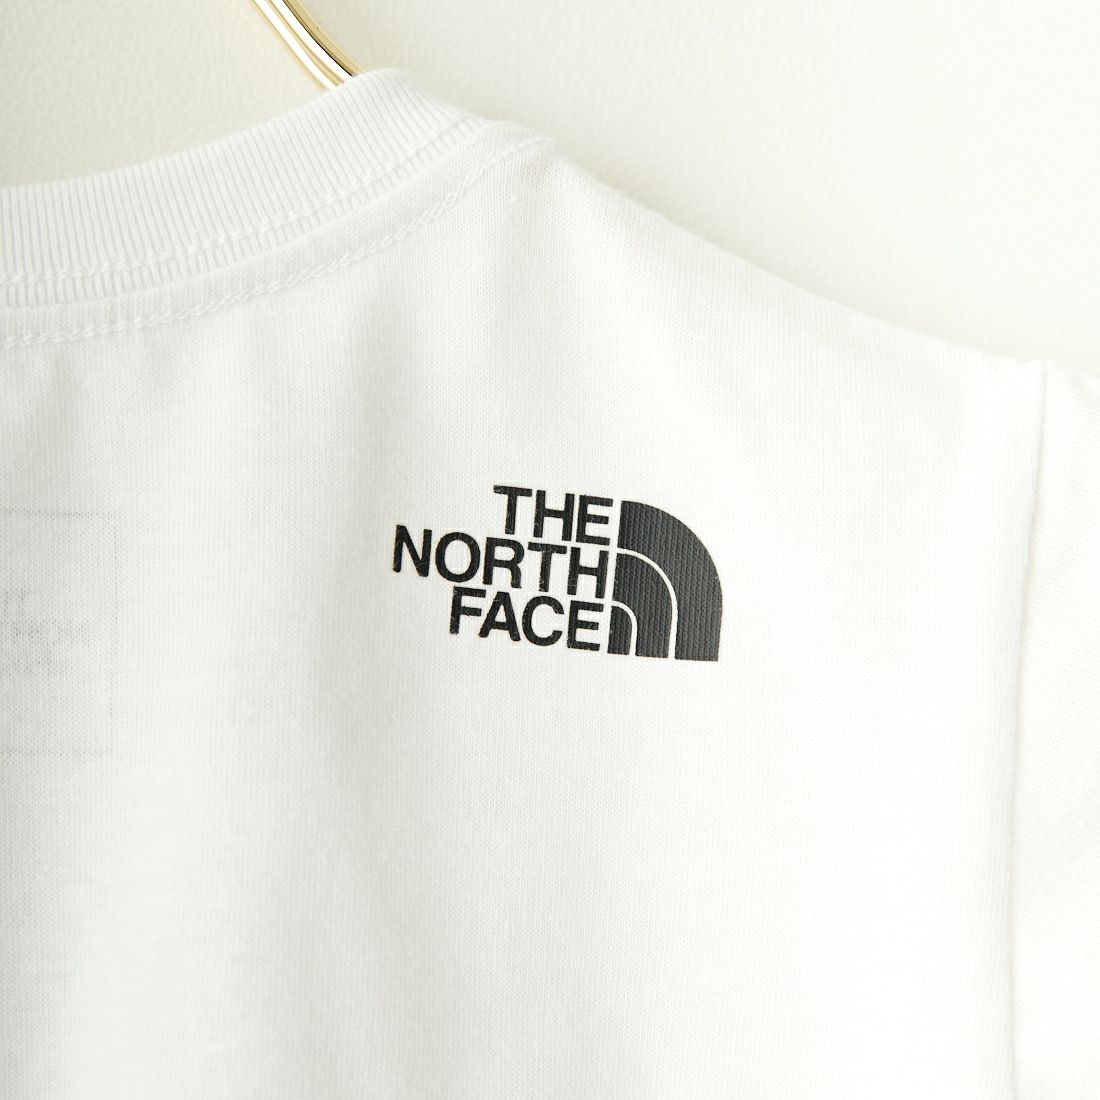 THE NORTH FACE [ザ ノースフェイス] ベビー ショートスリーブカモロゴTシャツ [NTB32359] W